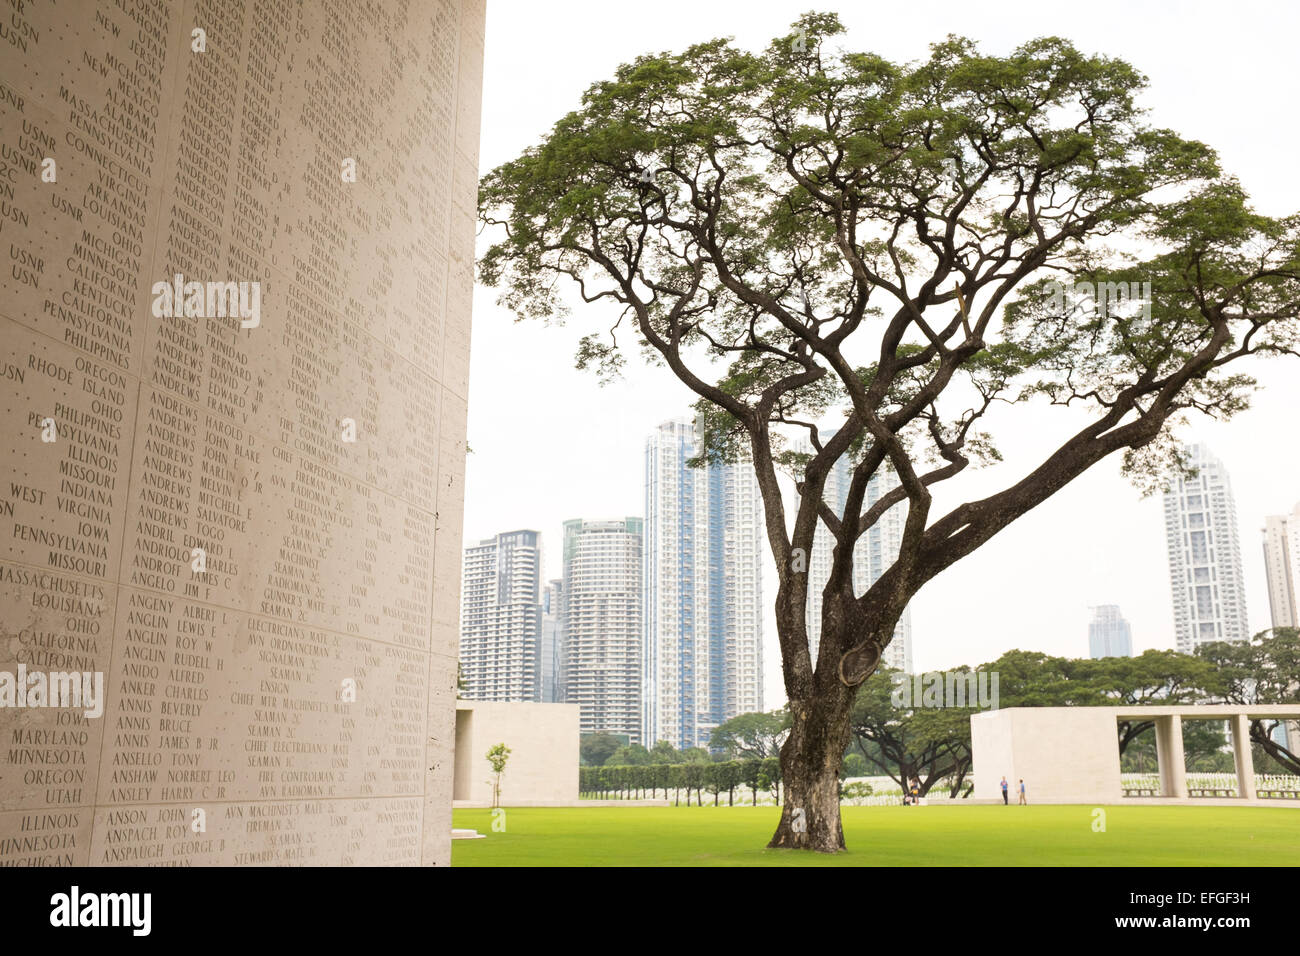 Manila American Cimitero e memoriale situato in Fort Bonifacio, Metro Manila. Foto Stock